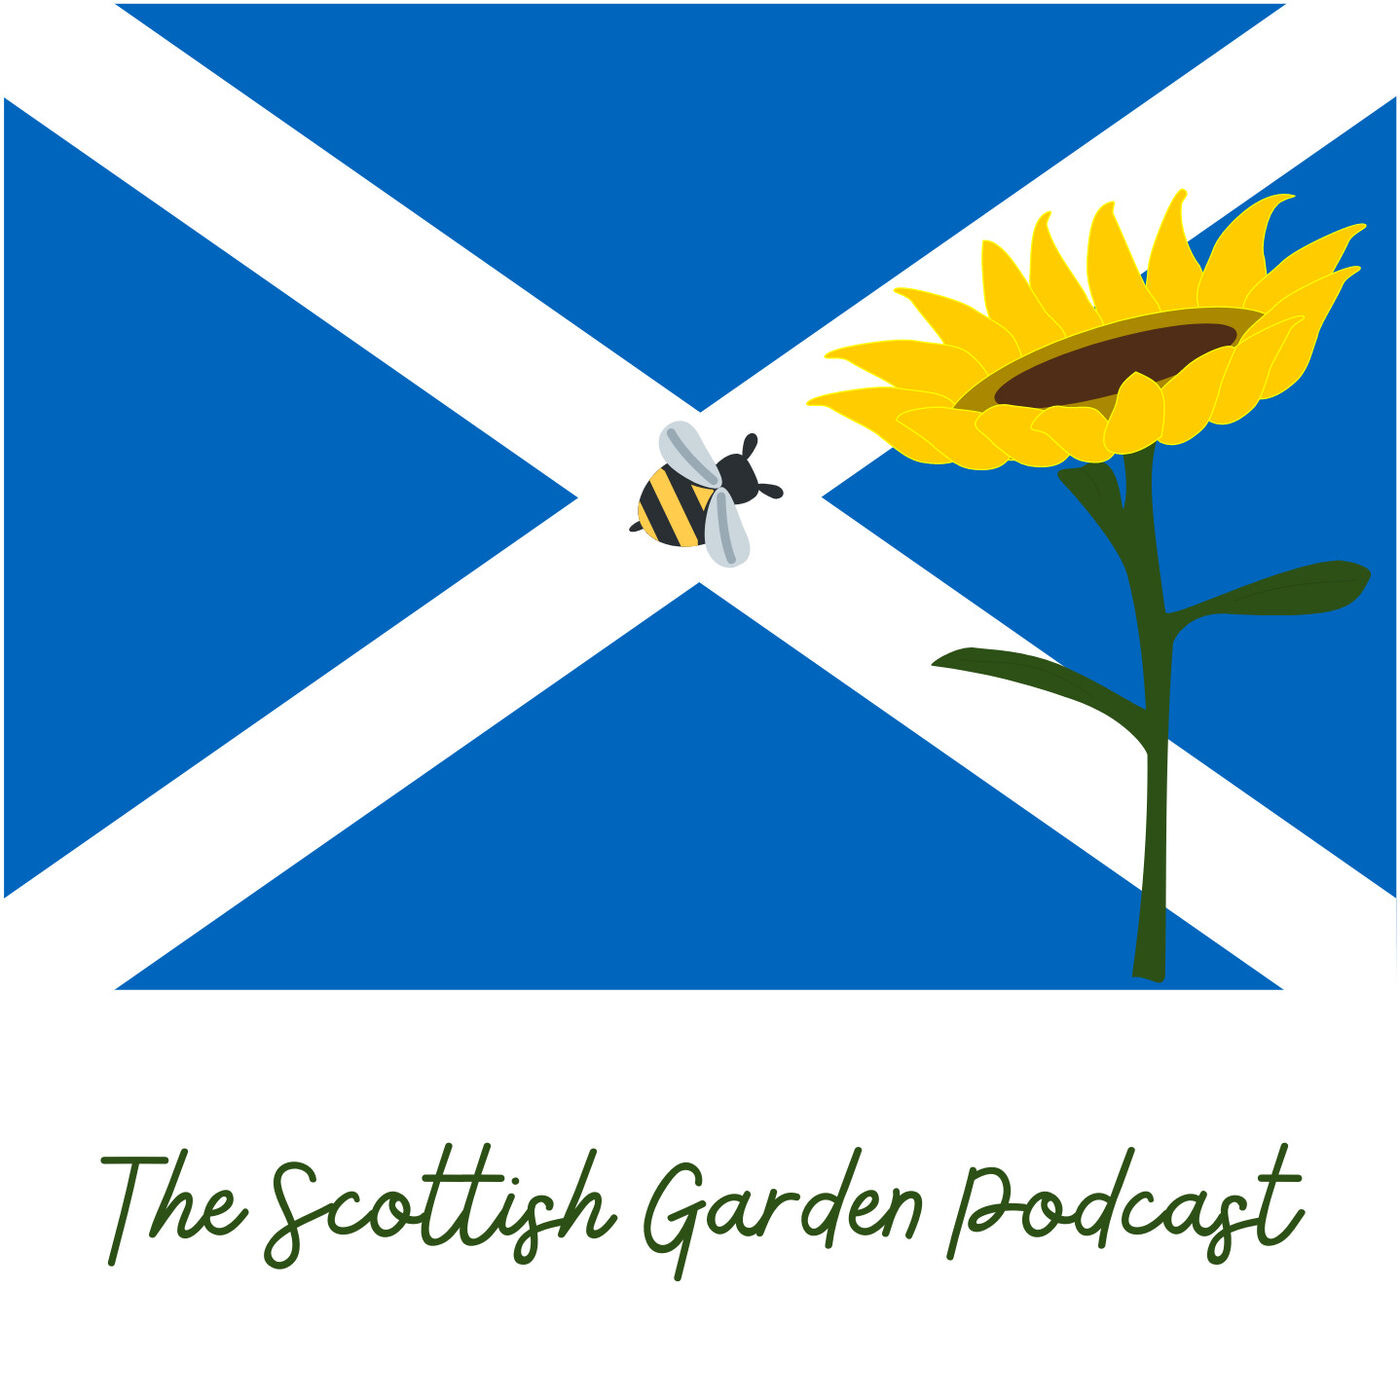 Episode 5: Scotland's Gardens Scheme